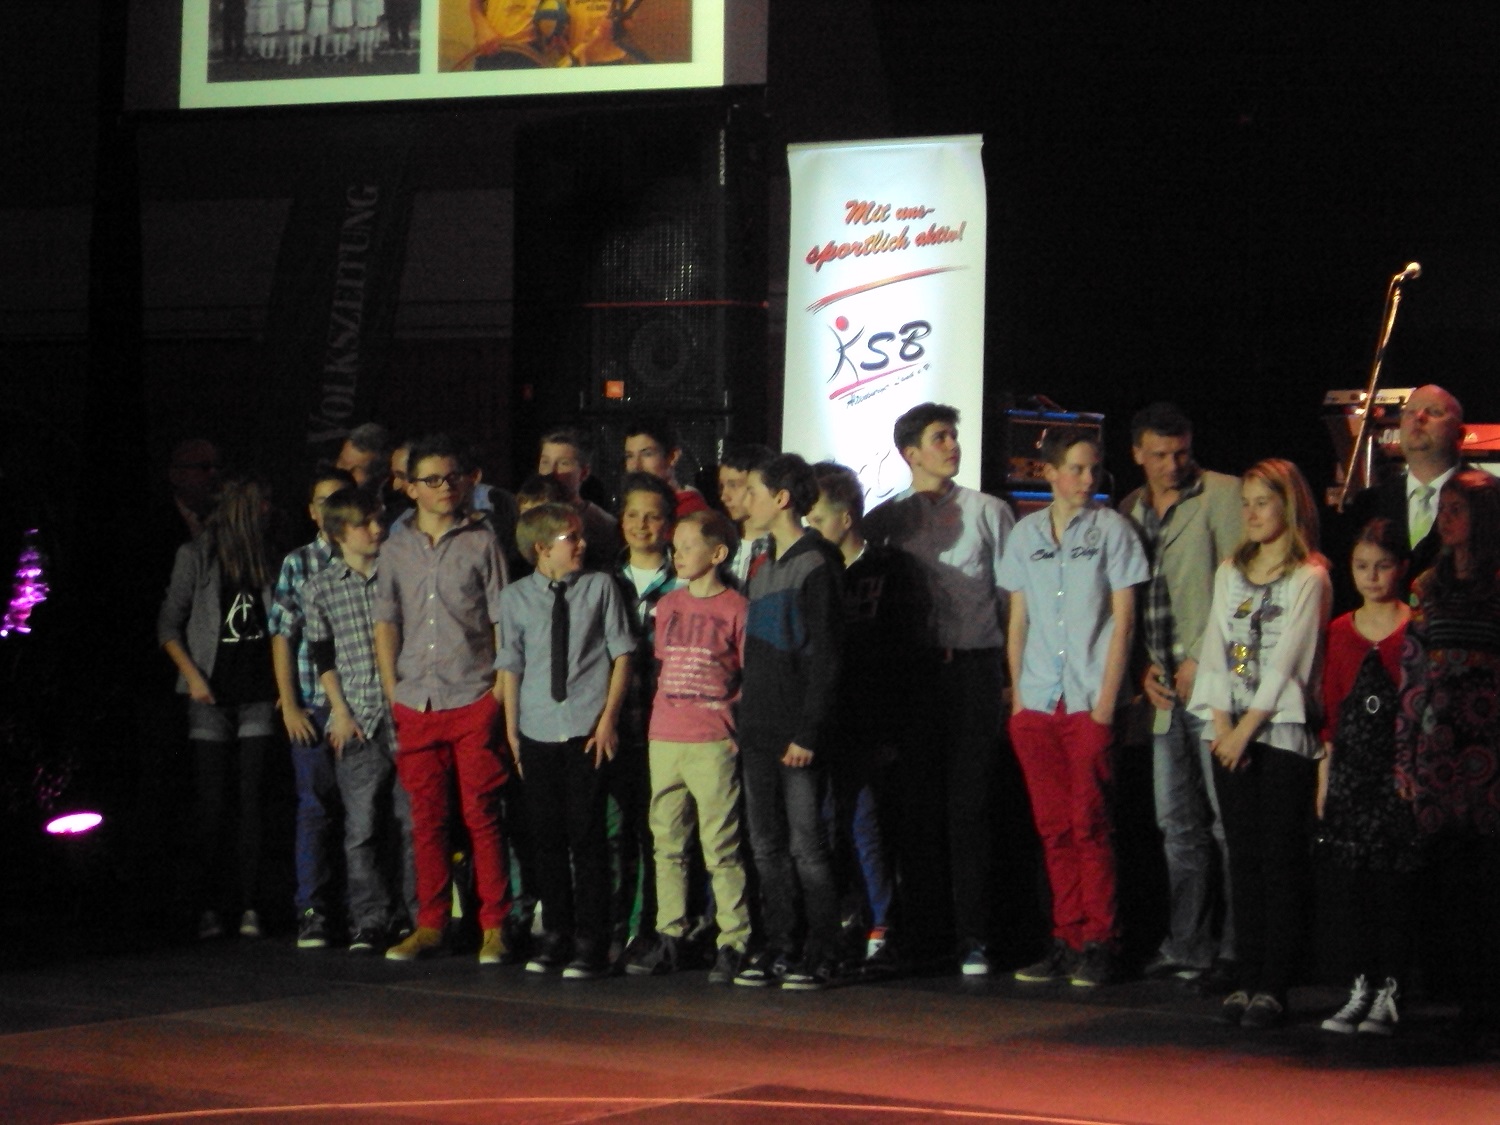 Nachwuchsmannschaft des Jahres 2012... als Sieger wurden damals die Schmöllner D-Junioren gewählt